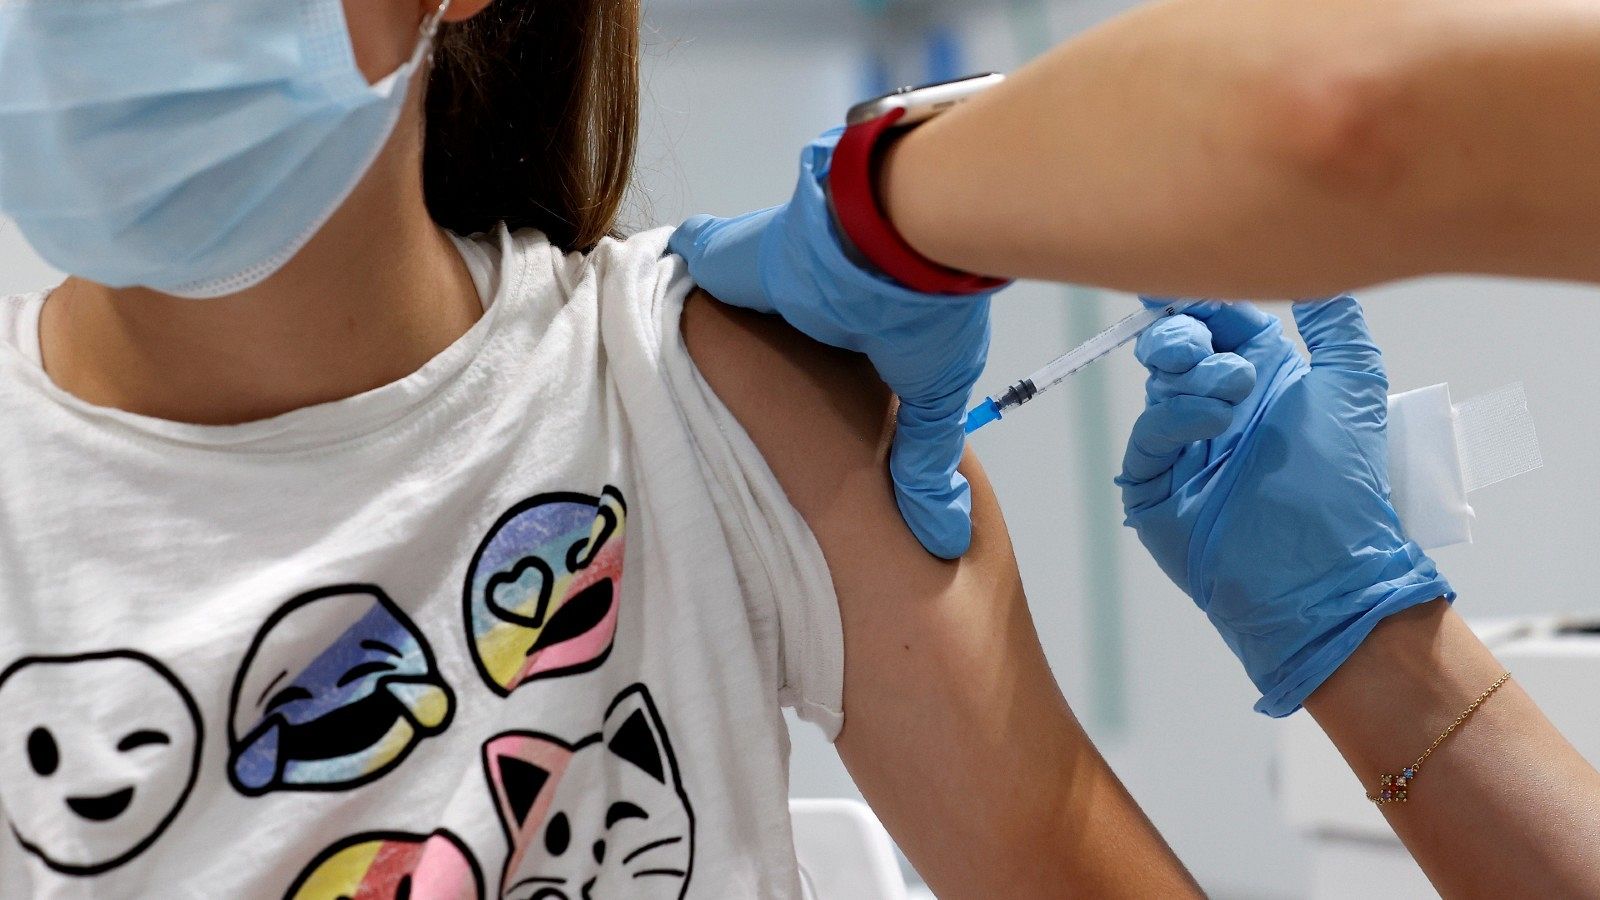 Una adolescente se vacuna contra la COVID-19 en el hospital Enfermera Isabel Zendal de Madrid